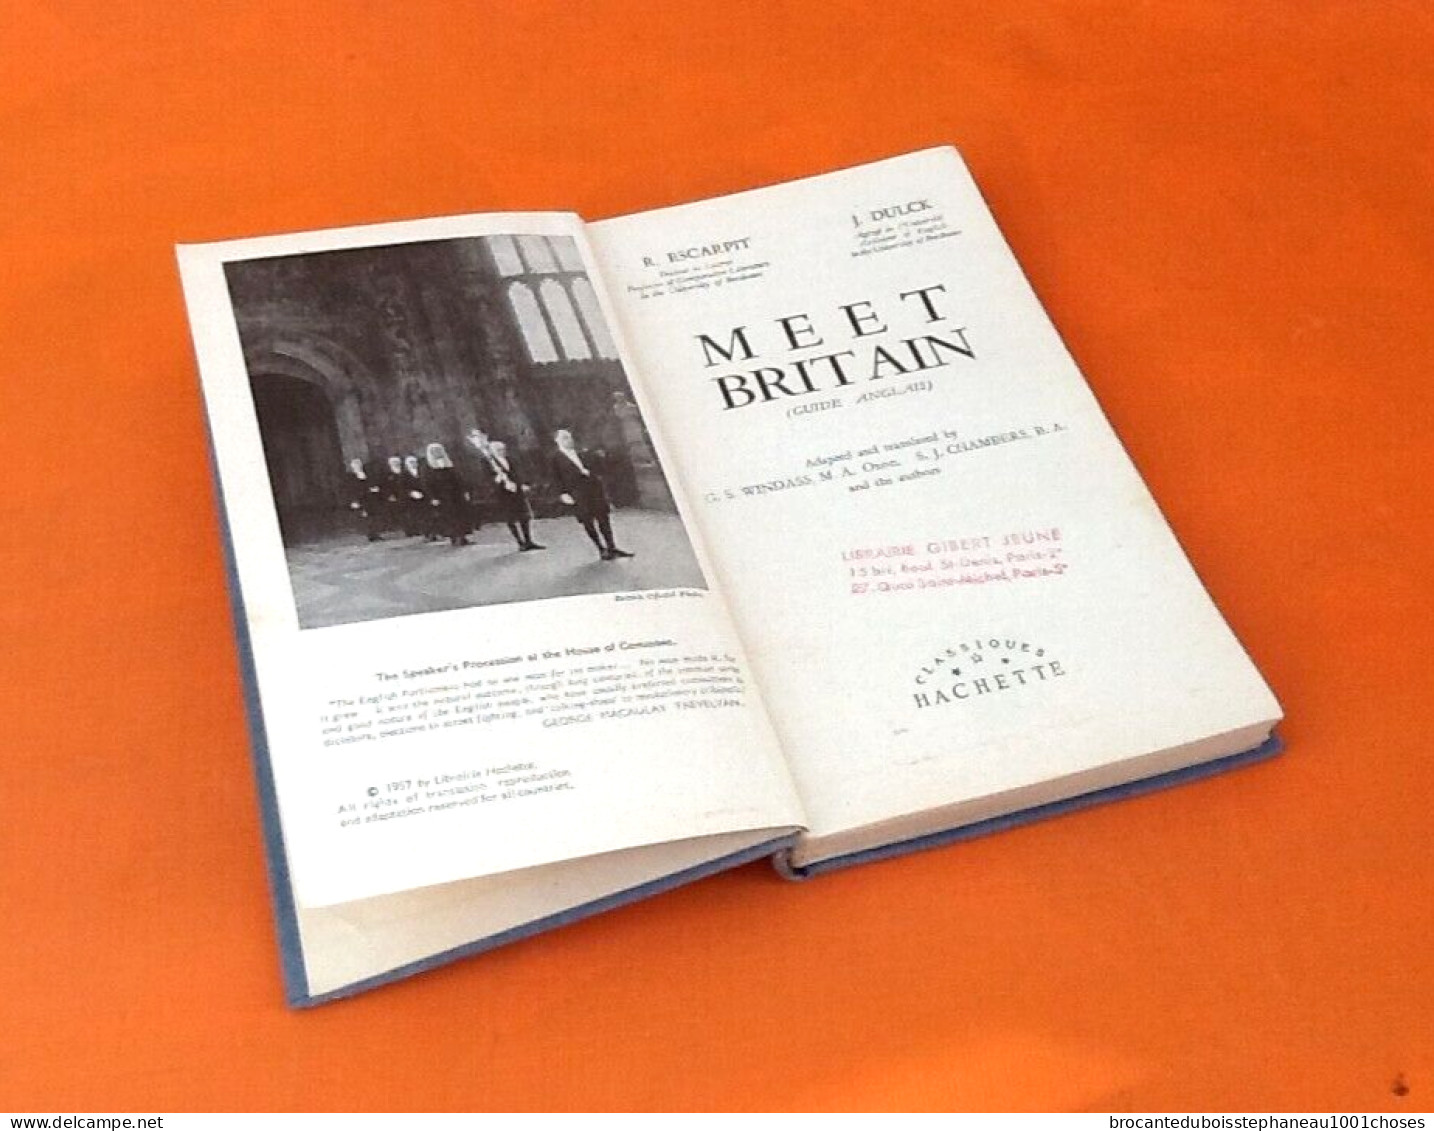 Robert Escarpit / Jean Dulck  Meet Britain Guide Anglais (1957) Classiques Hachette - Education/ Teaching